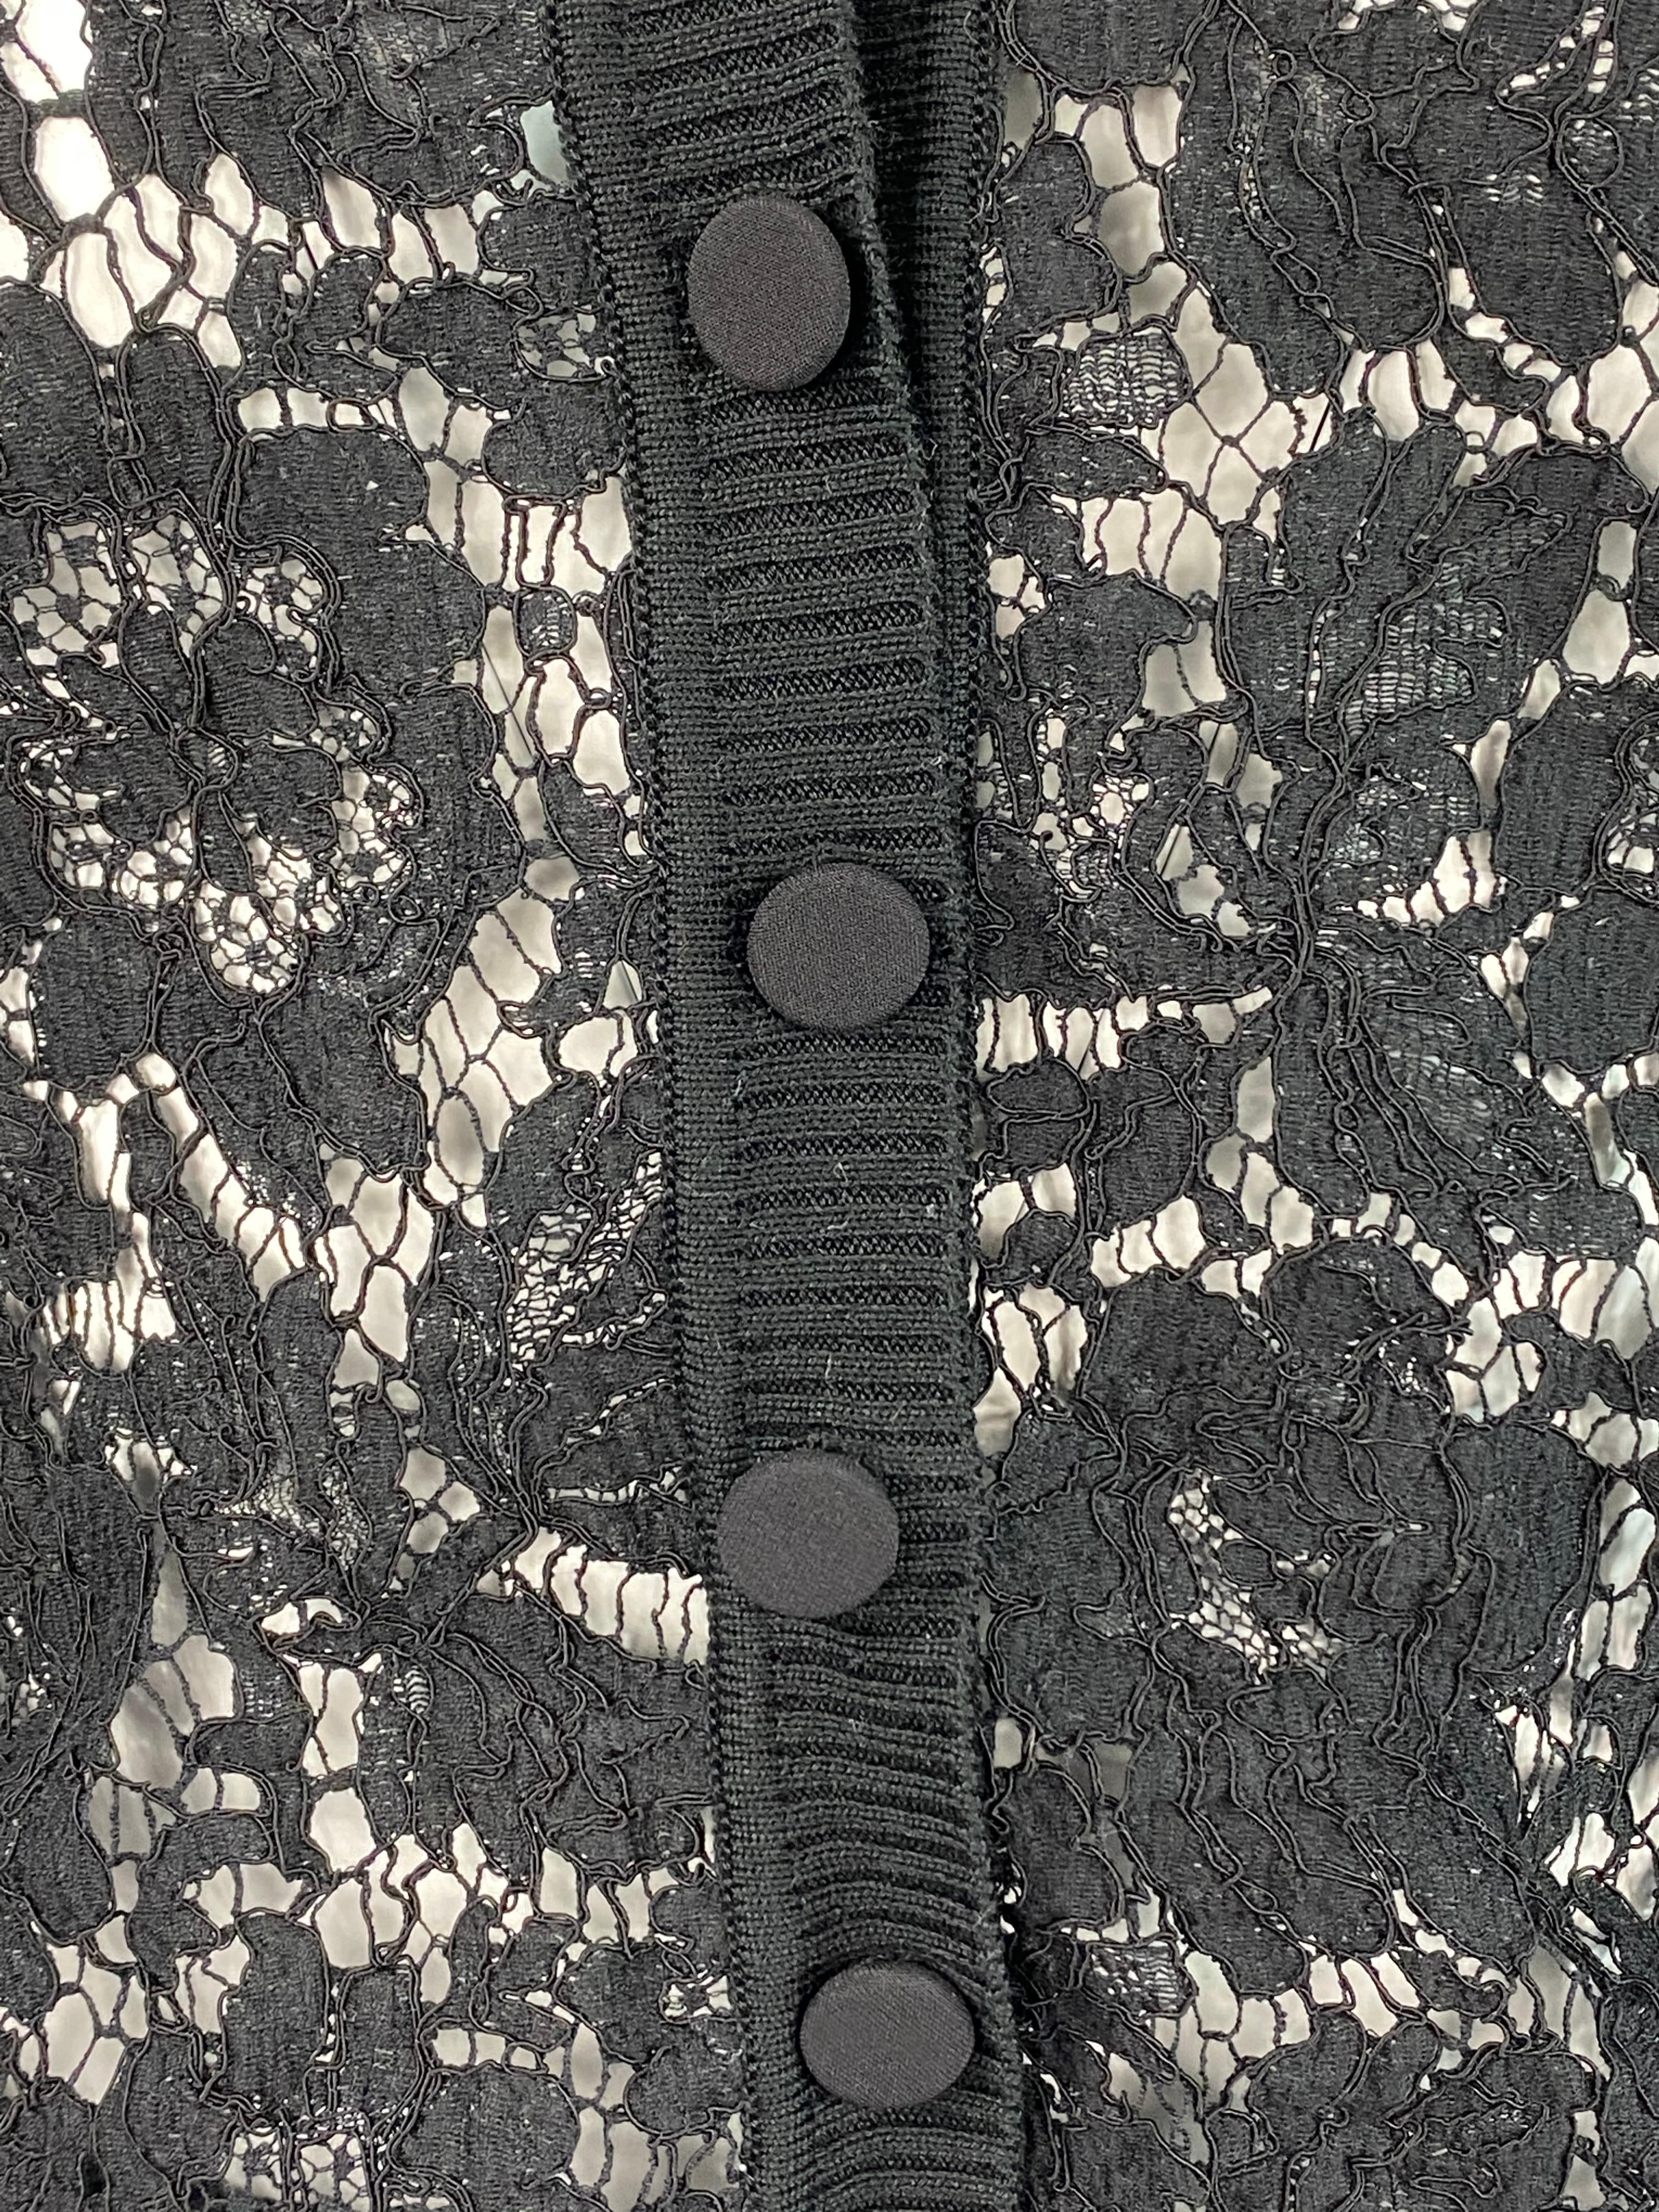 Einzelheiten zum Produkt:

Mit schwarzer, geblümter Spitze, durchsichtig, V-Ausschnitt, Knopfverschluss vorne, schwarzes Strickdetail.
Hergestellt in Italien.